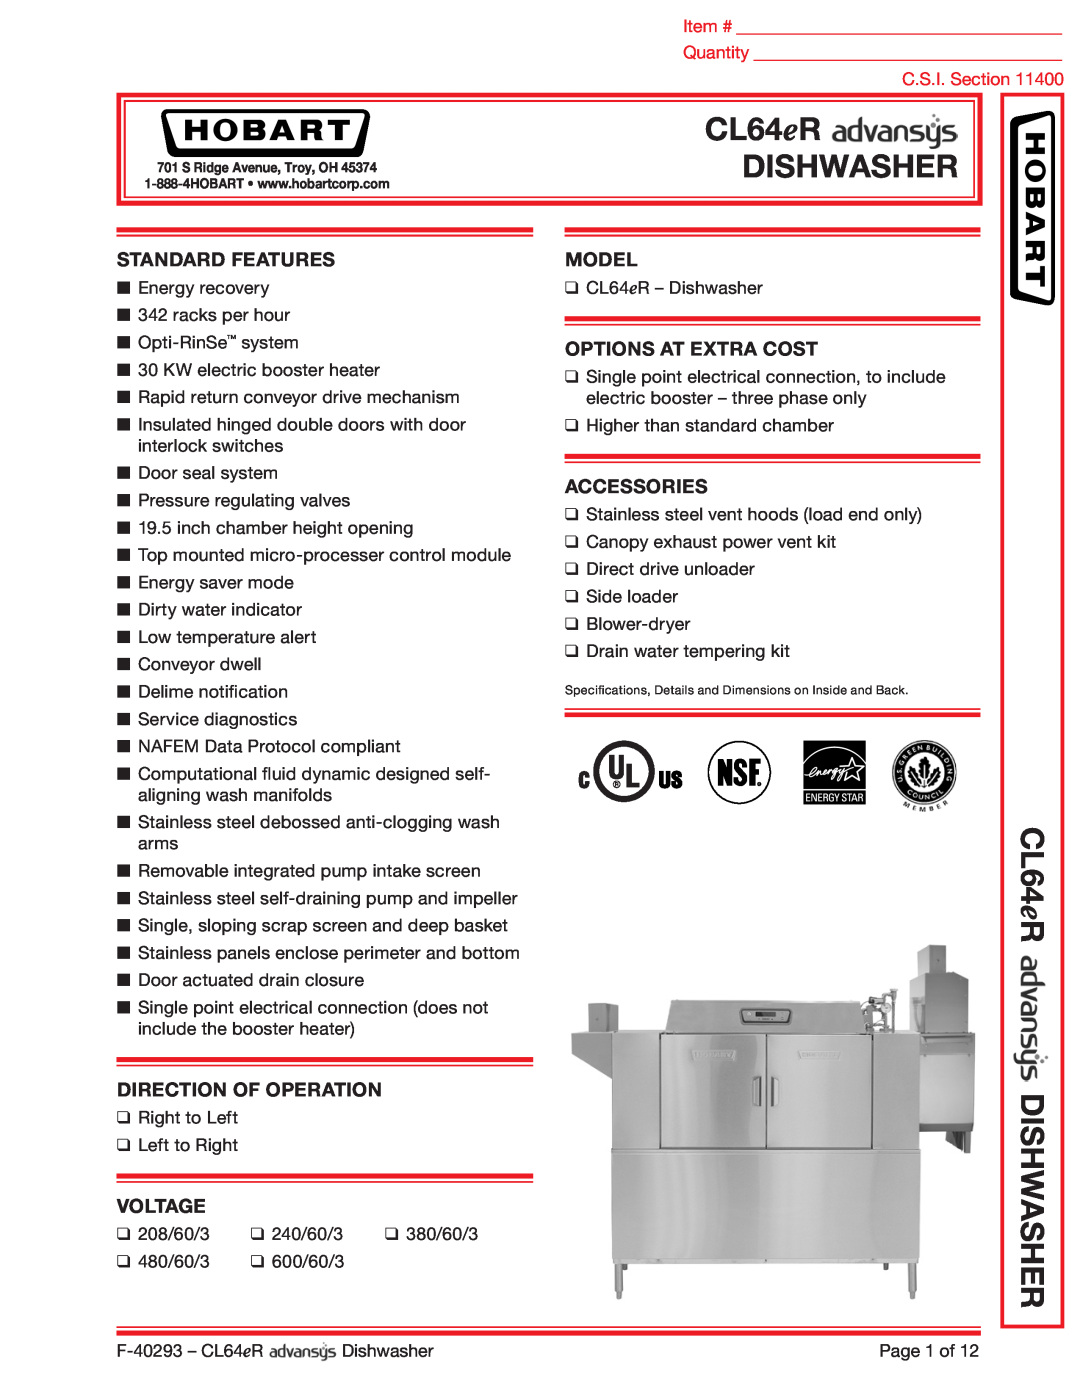 Hobart CL64ER dimensions CL64 eR, Dishwasher, CL64eR DISHWASHER, Standard Features, Direction Of Operation, Voltage, Model 